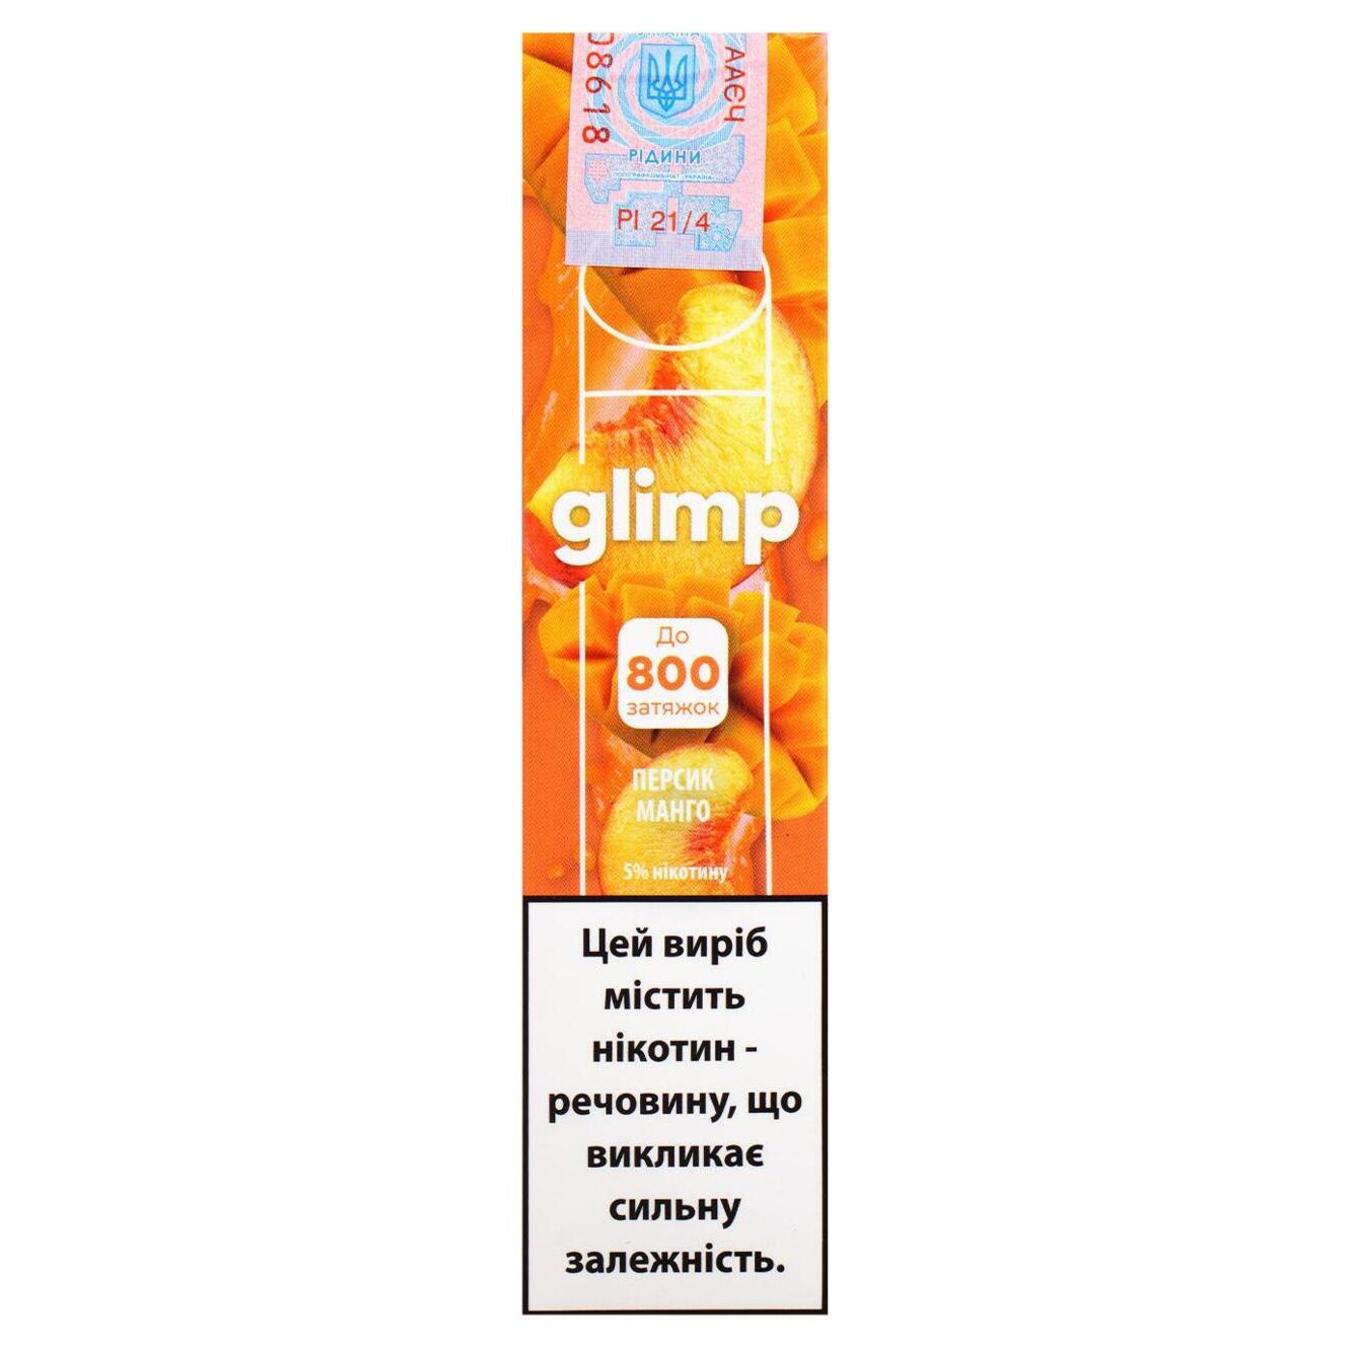 Випарювач зі смаком Персик манго GLIMP 800 5% 2мл (ціна вказана без акцизу)